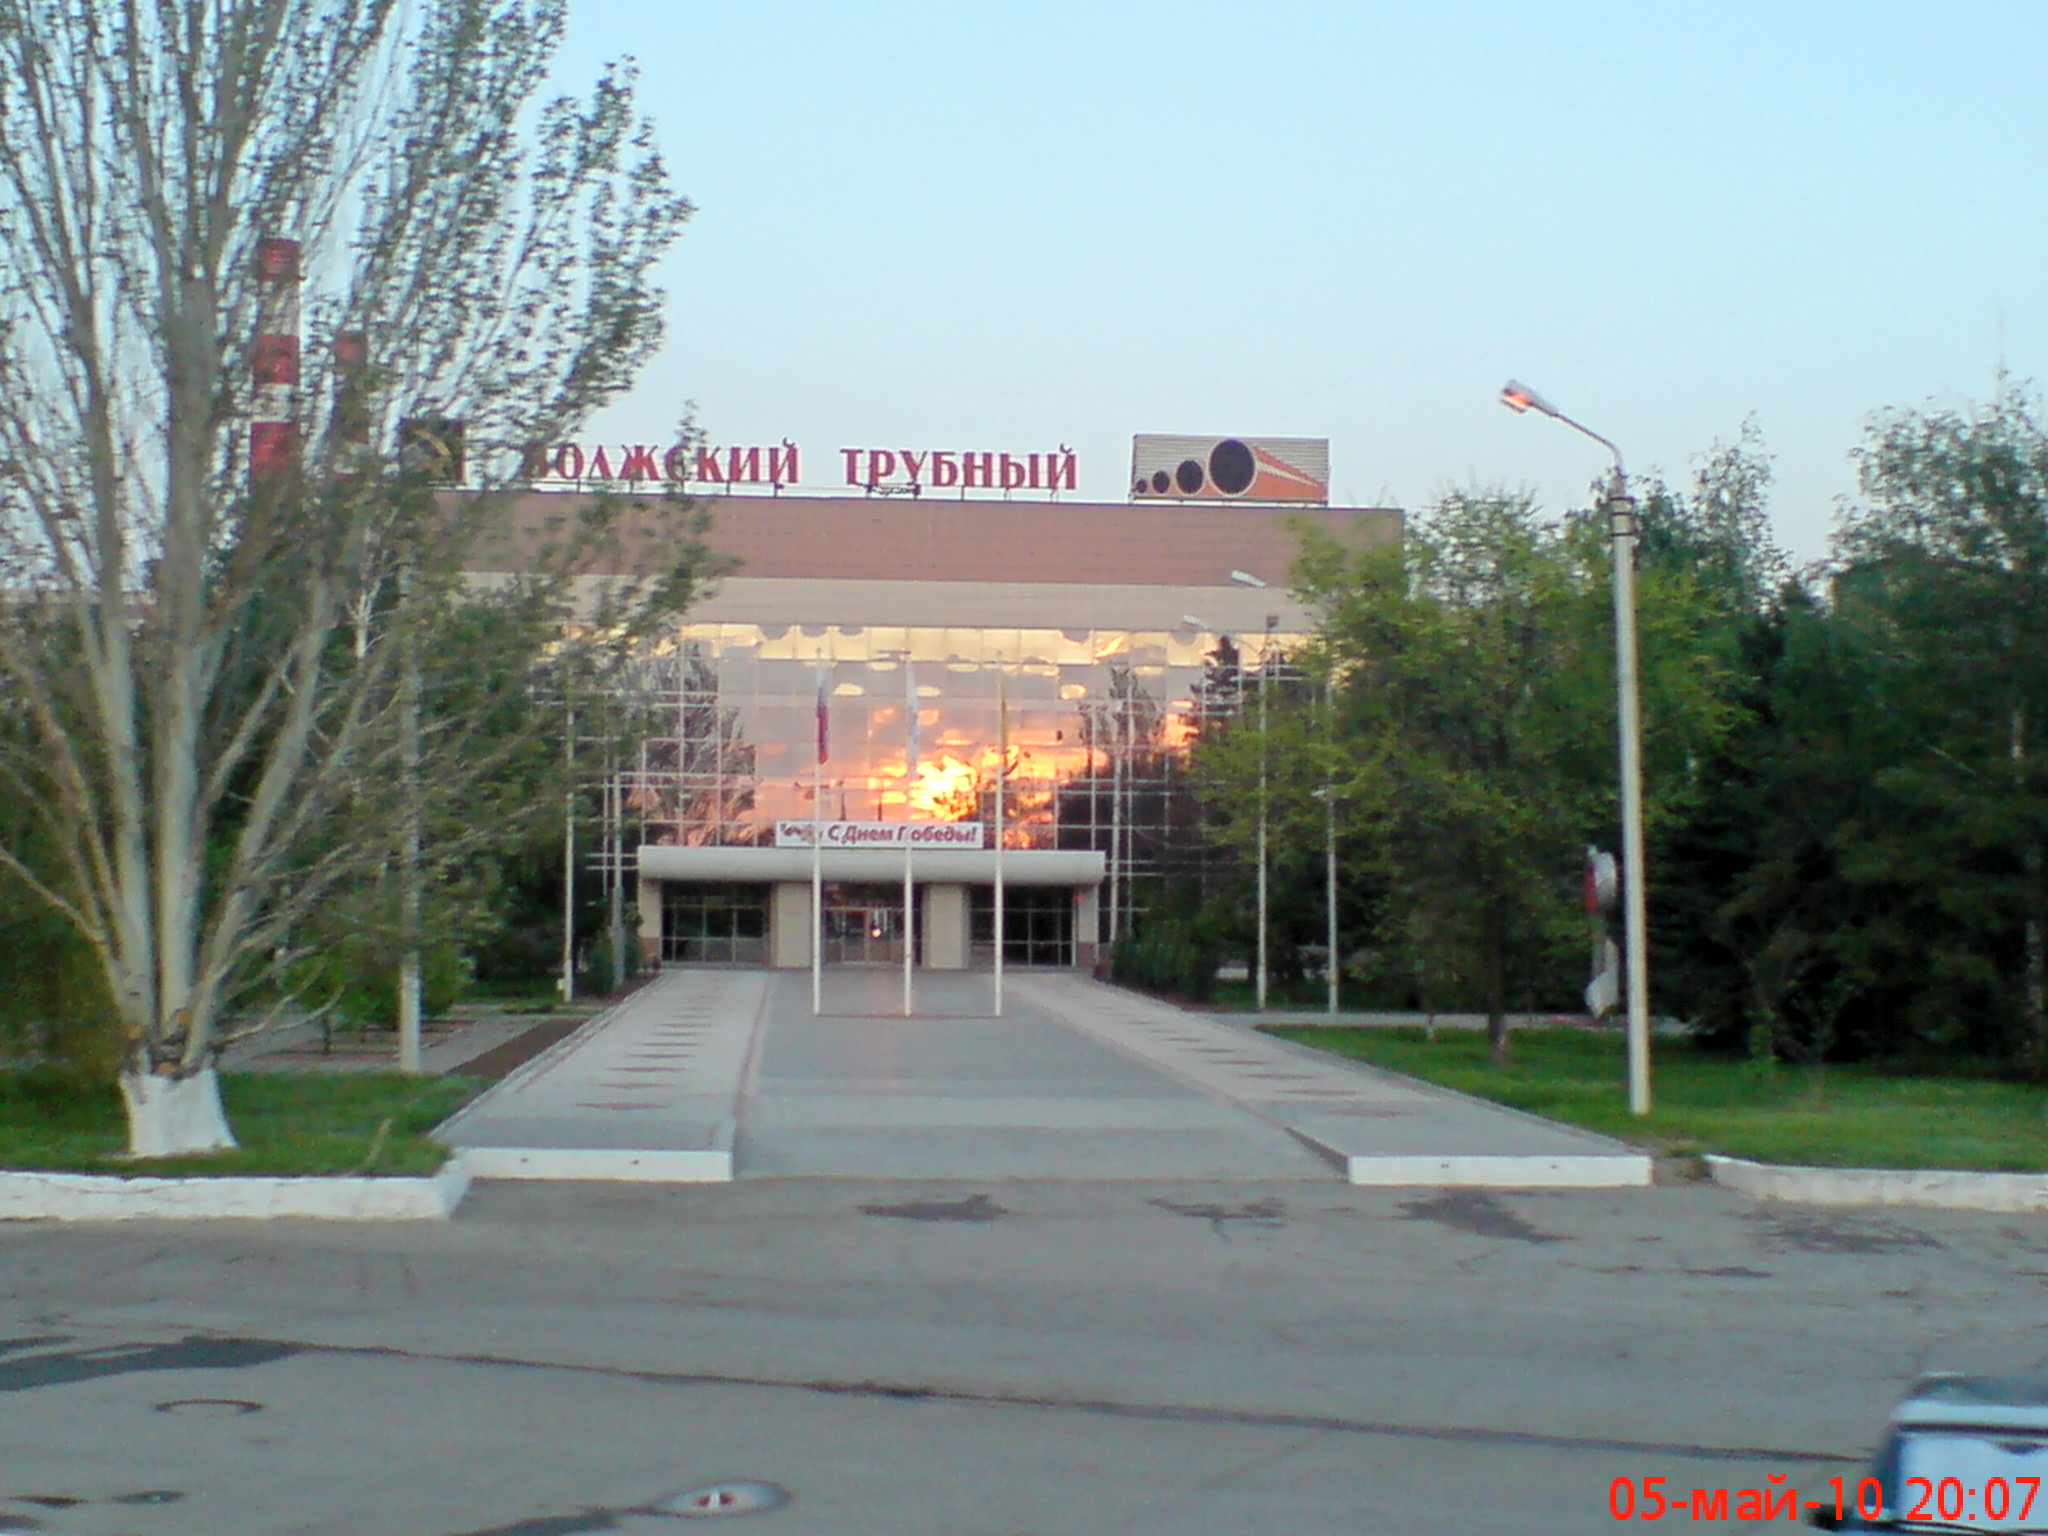 Город Волжский трубный завод